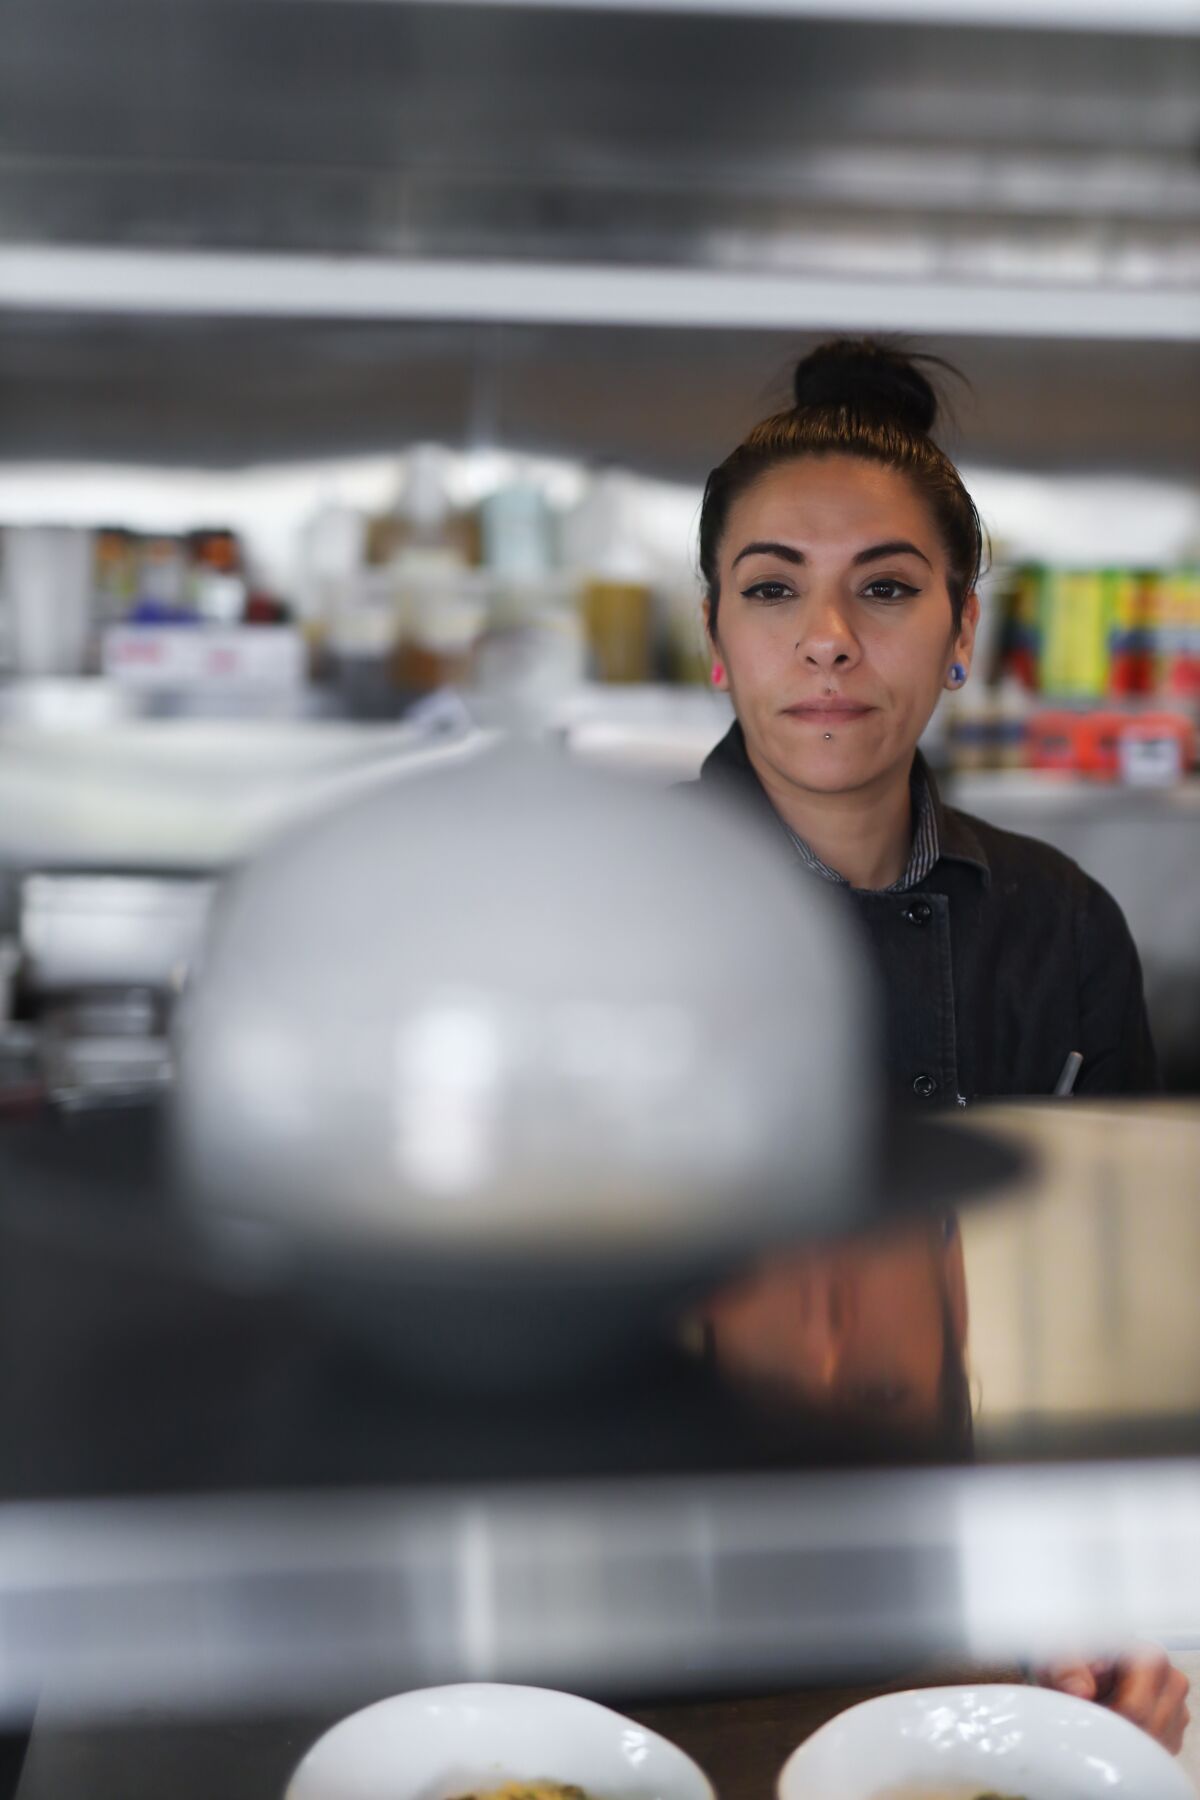 Head chef Daniela Martinez in the kitchen at Semola, an Ambrogio15 Gastronomy Project